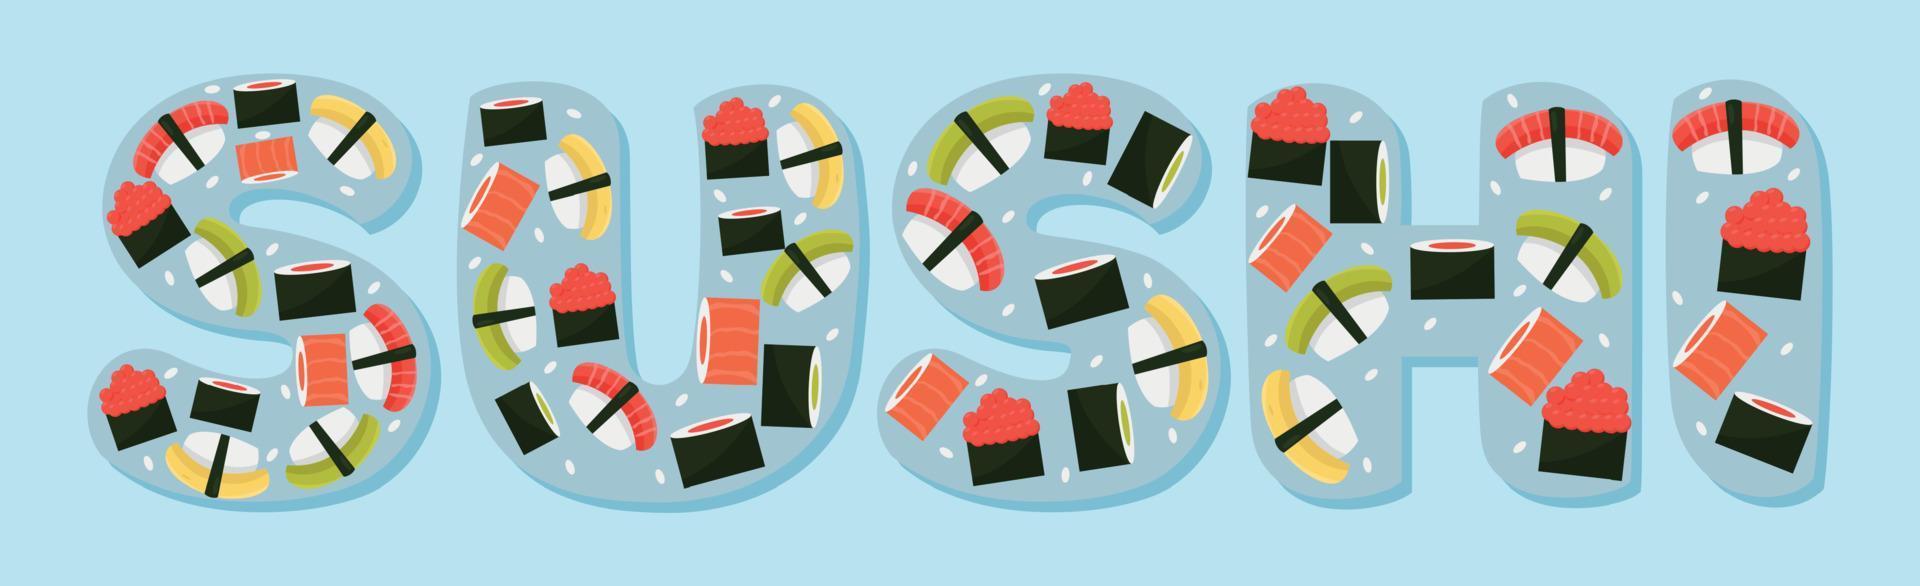 Wort Sushi stilisiert als stilvolles Logo - Vektor